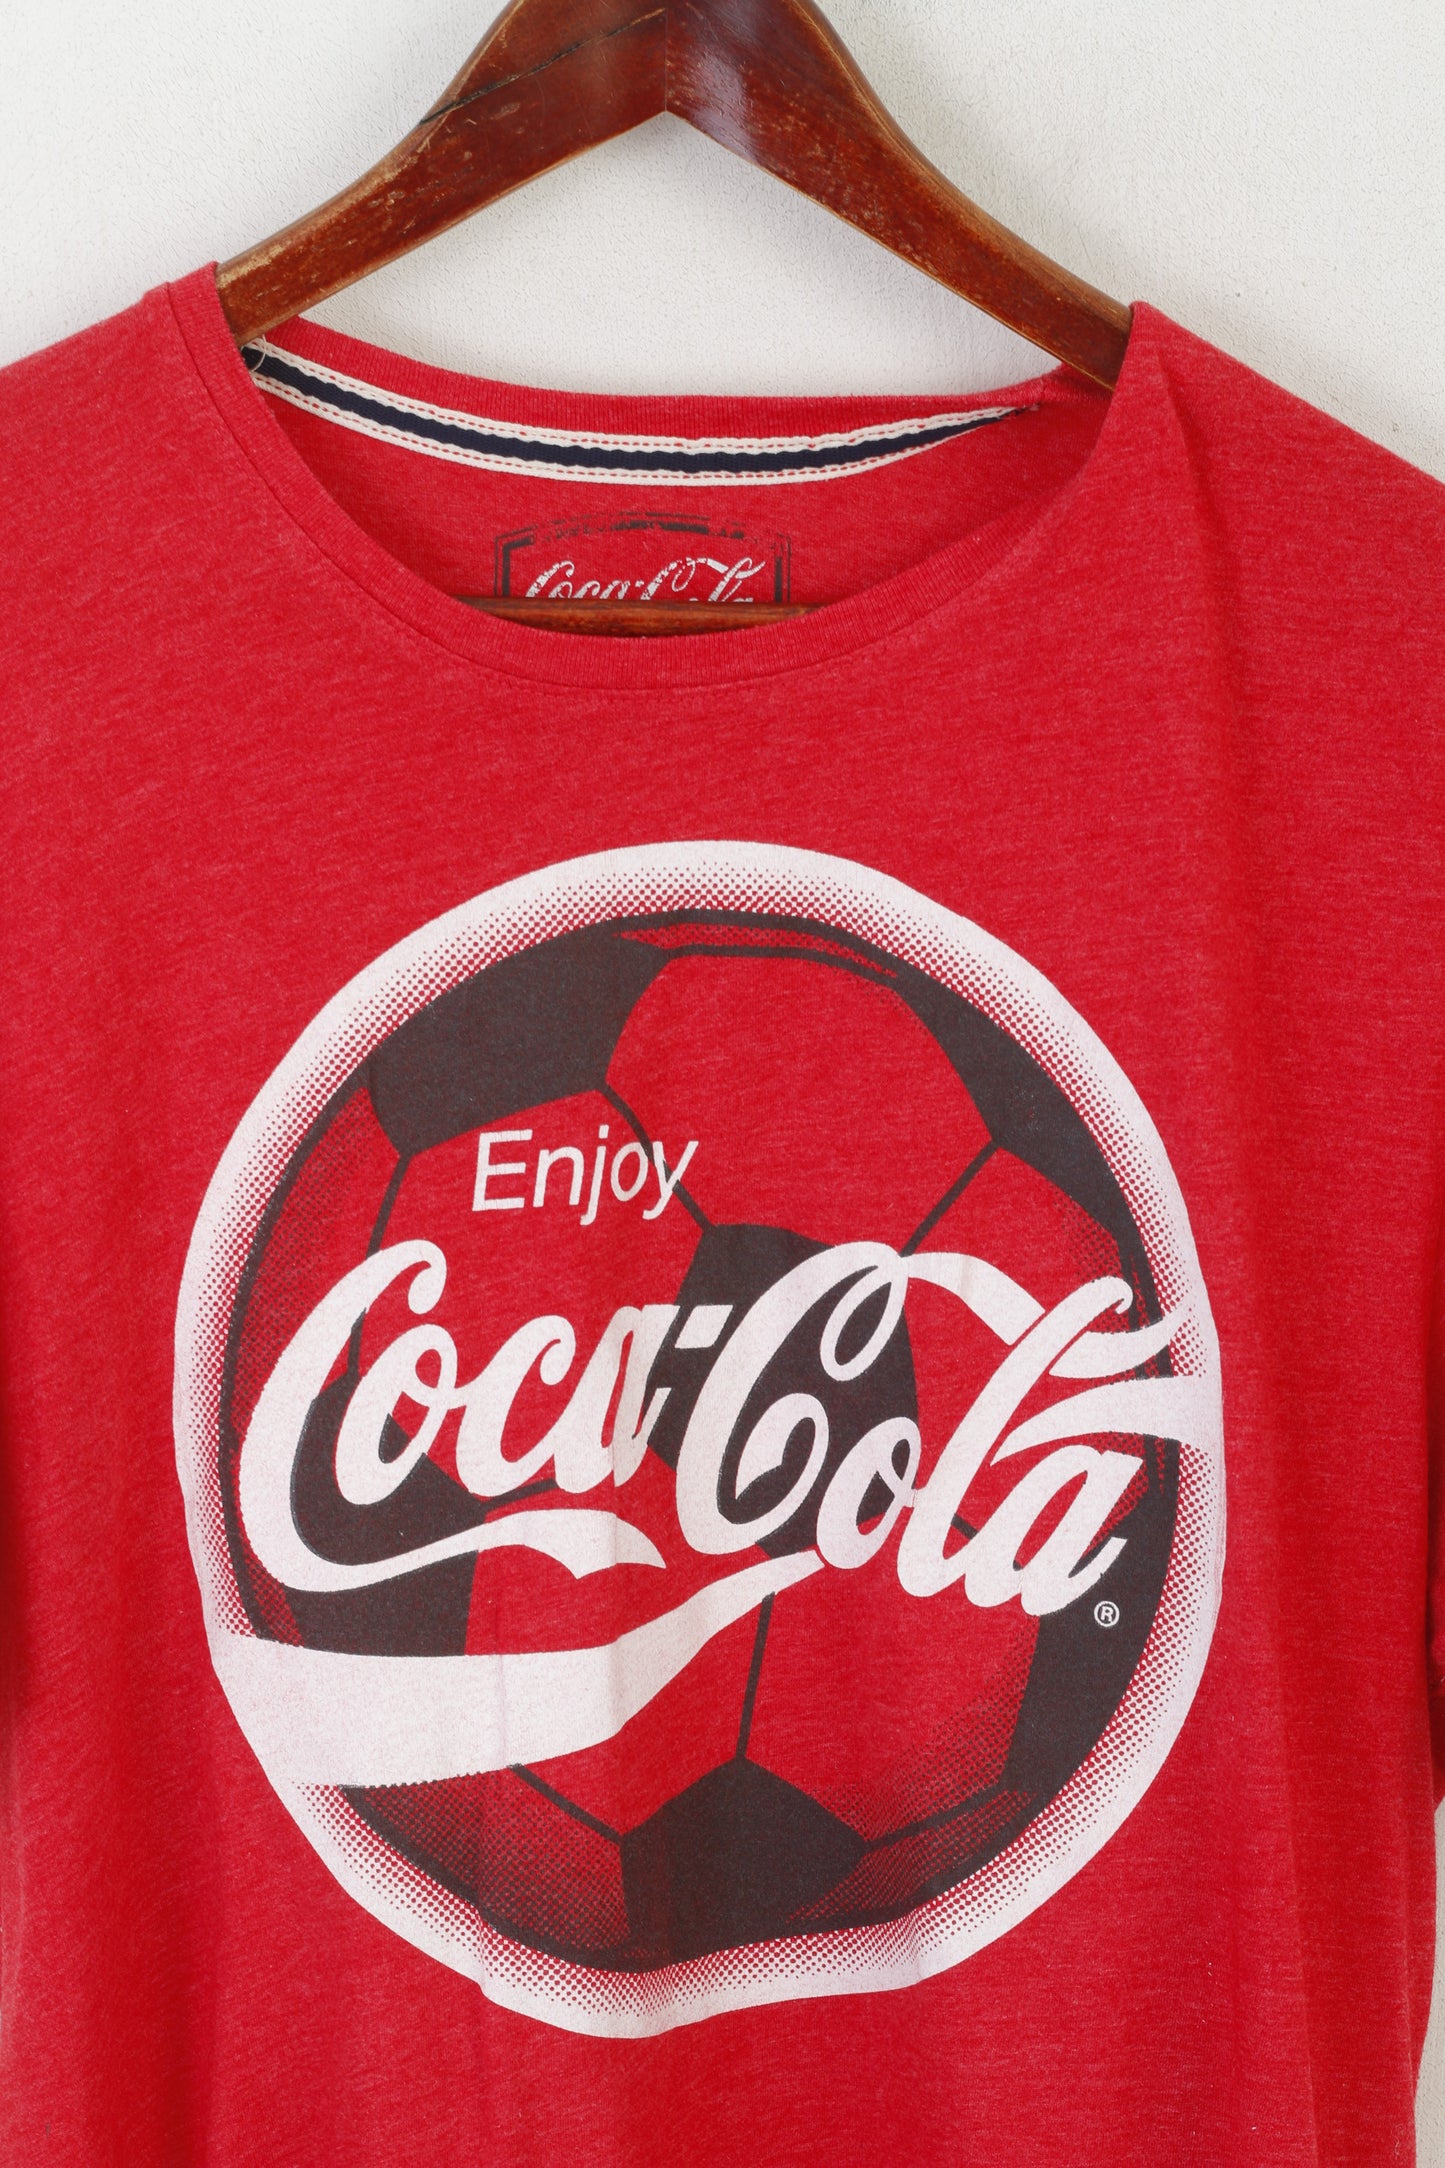 F&F Men L Shirt Red Cotton Enjoy Coca-Cola Football Crew Neck Casual Top